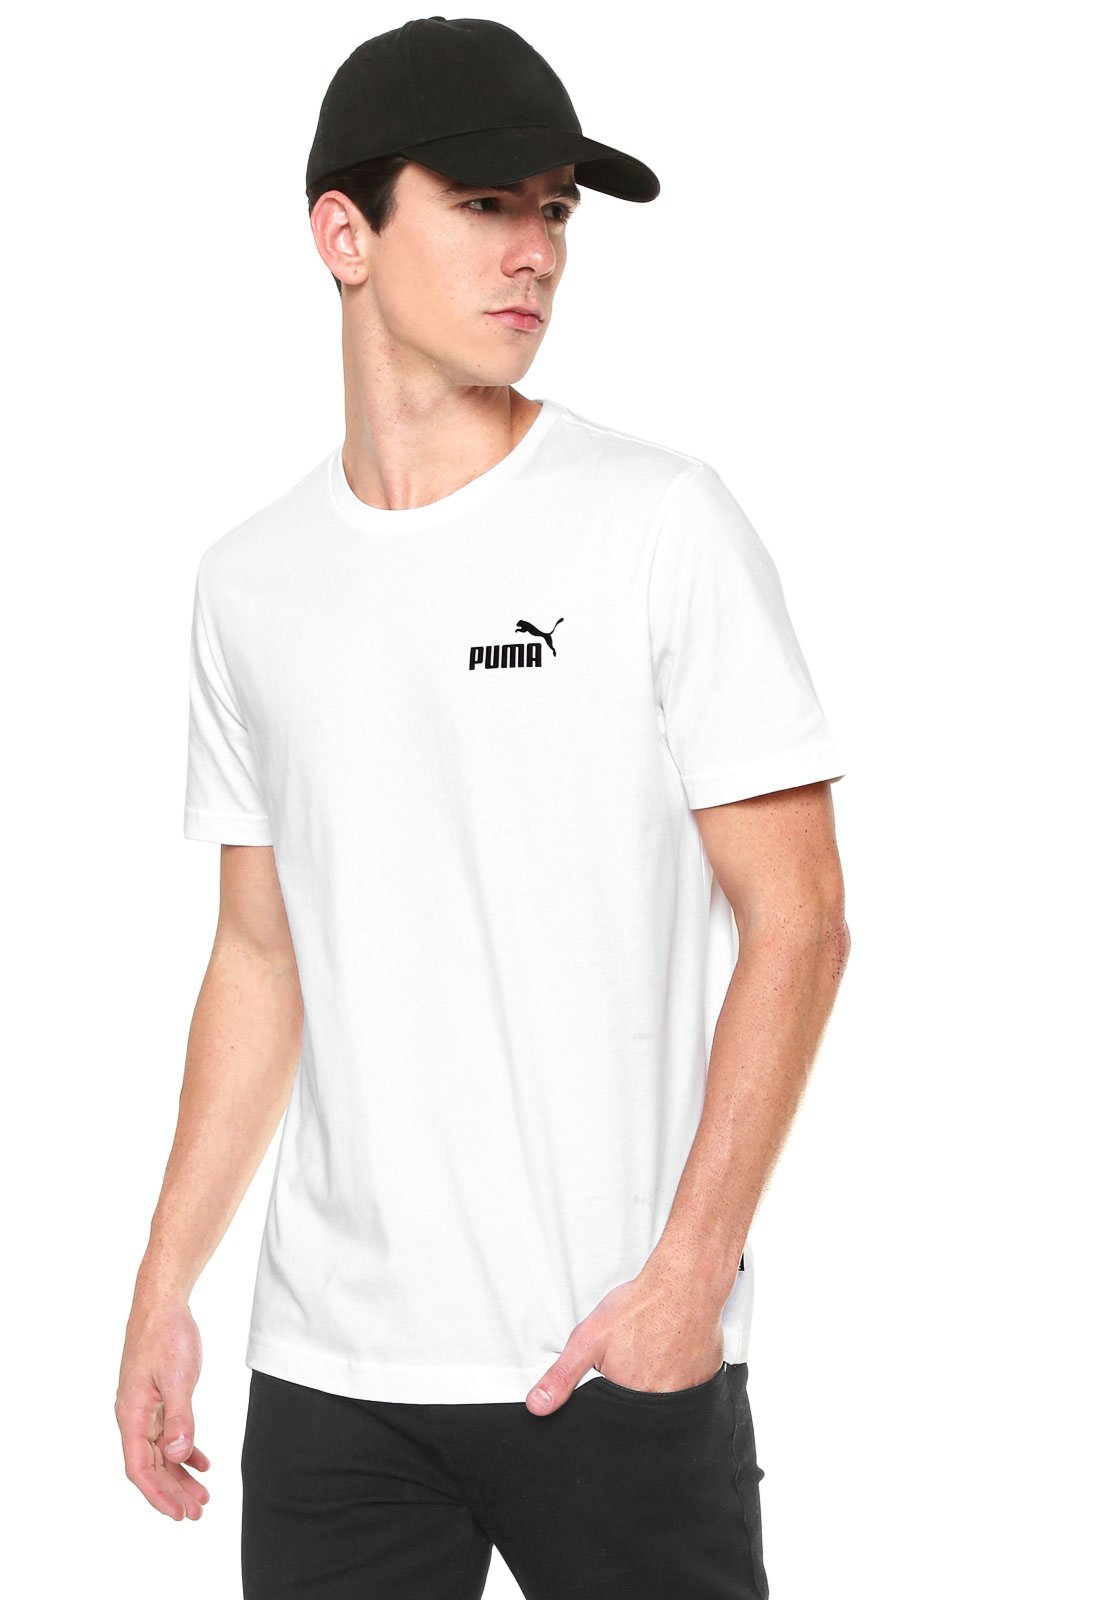 camiseta puma branca feminina